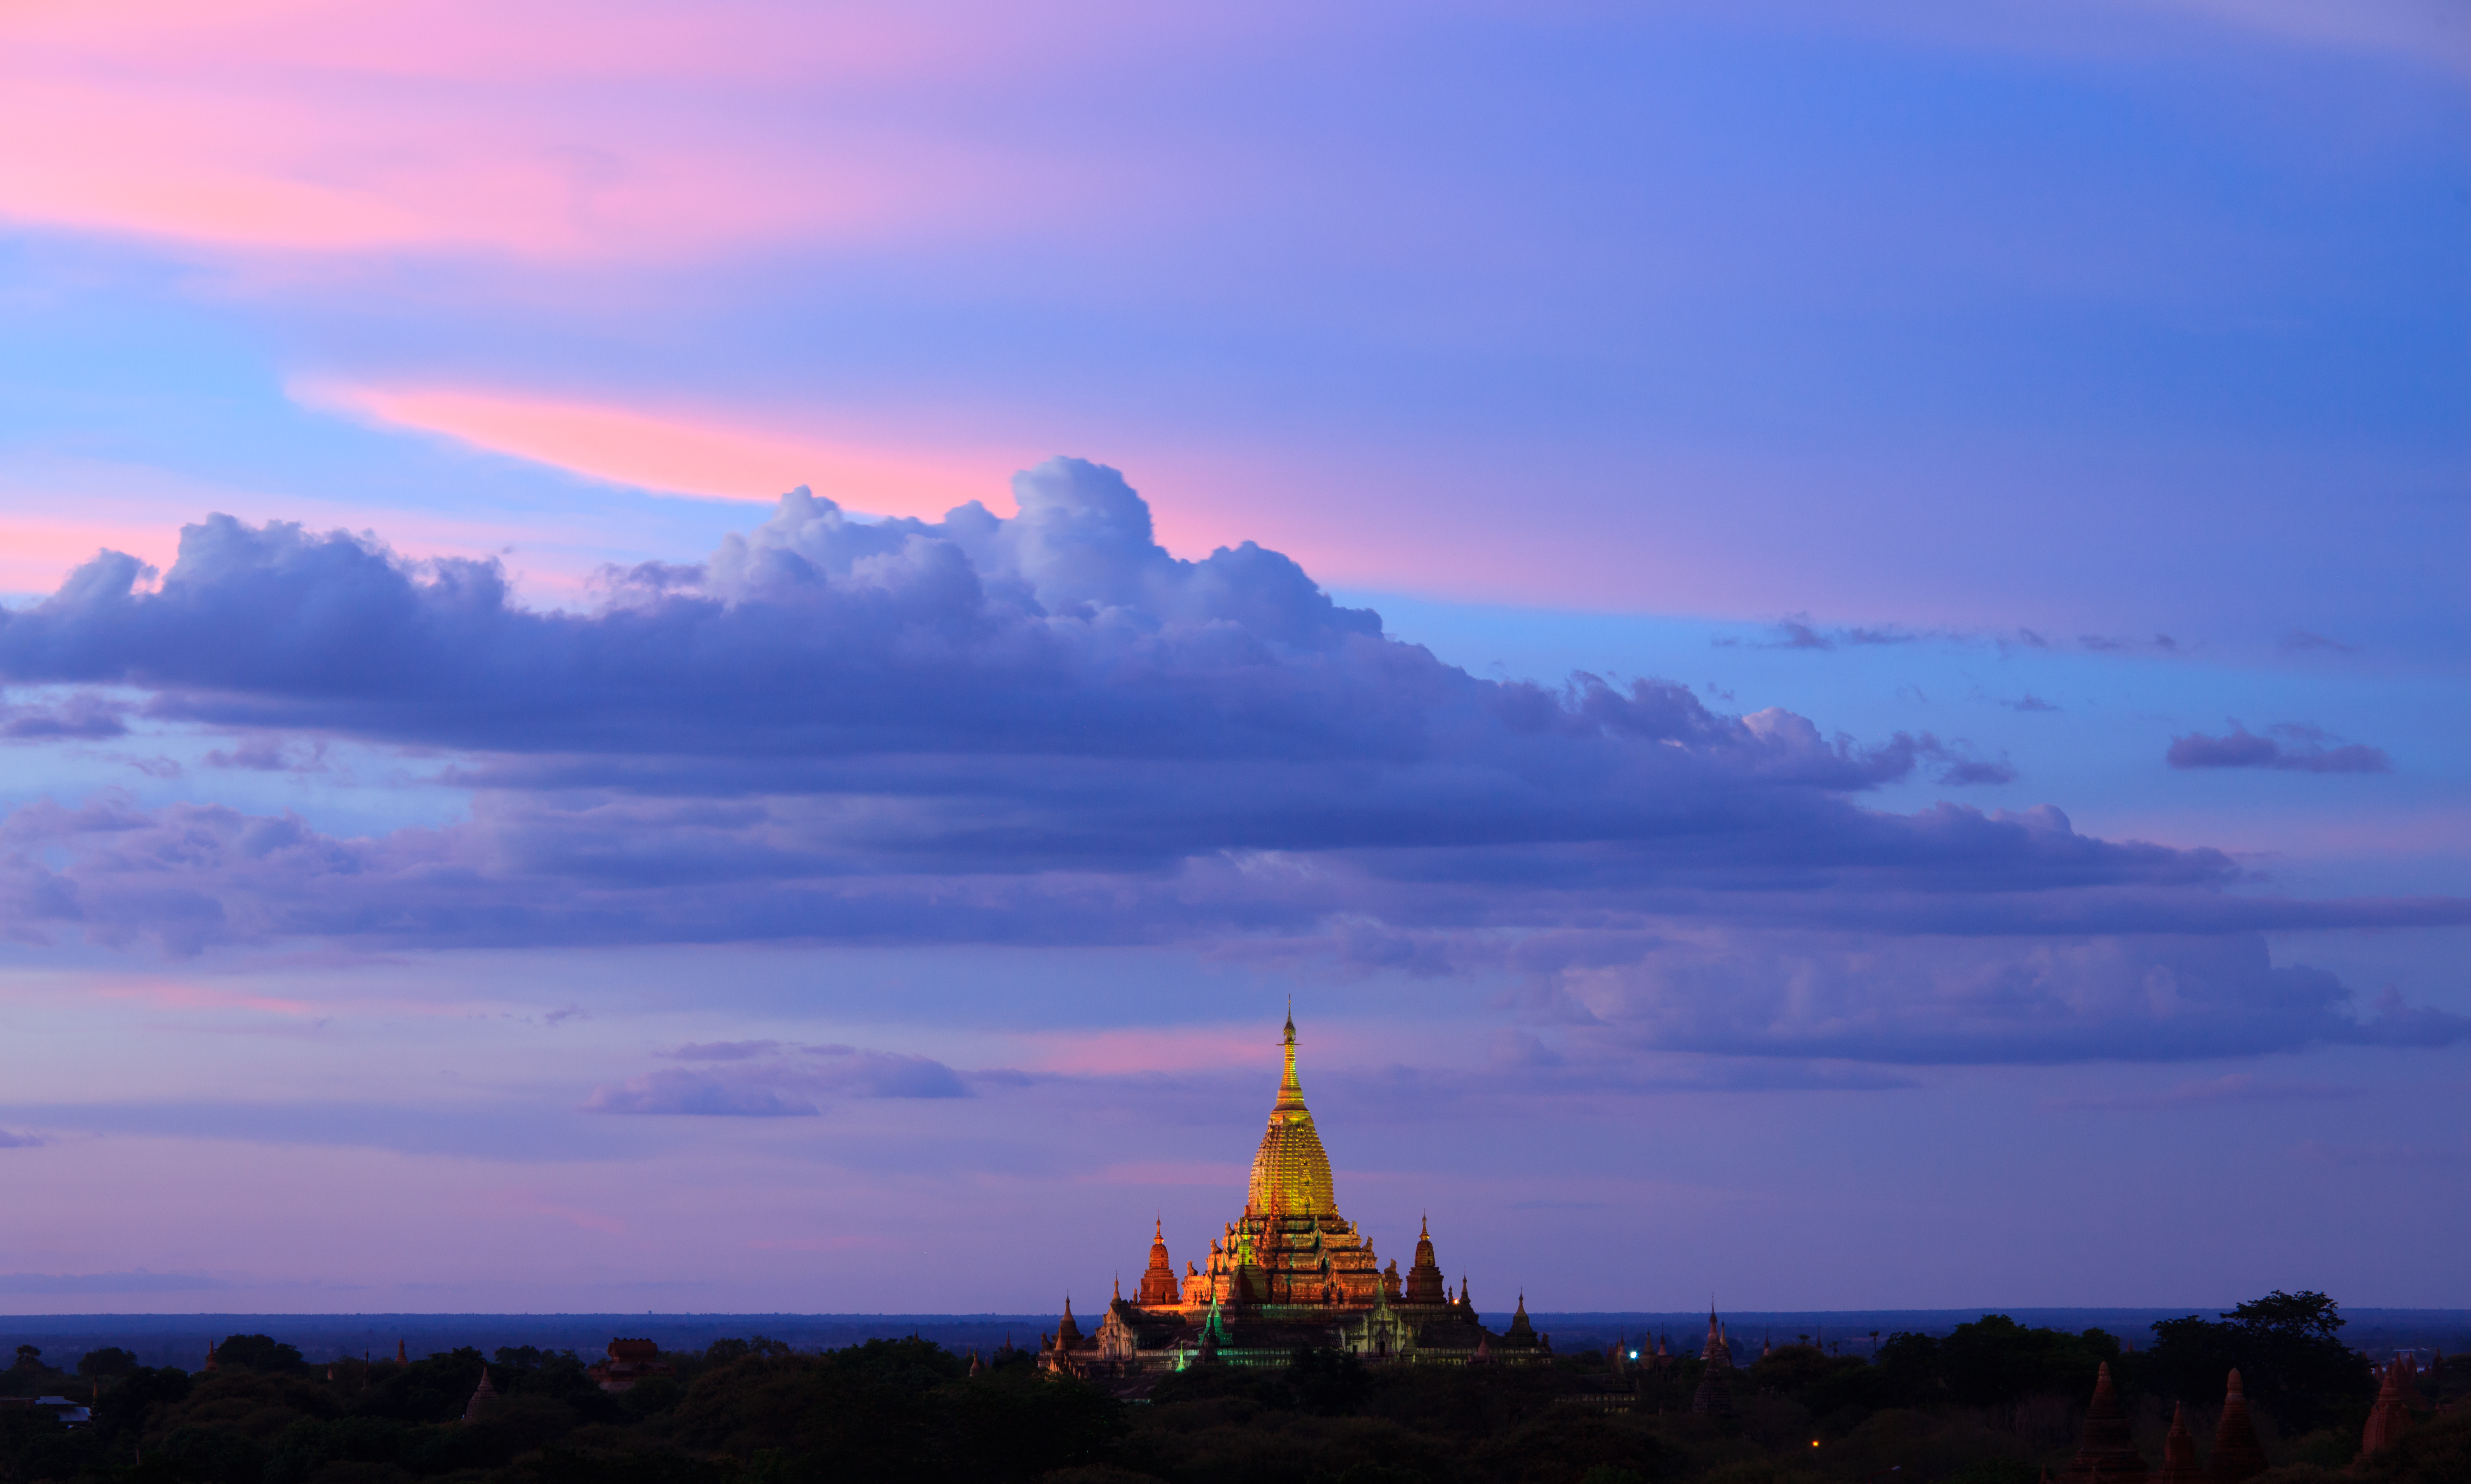 ananda temple at twilight, Bagan, Myanmar